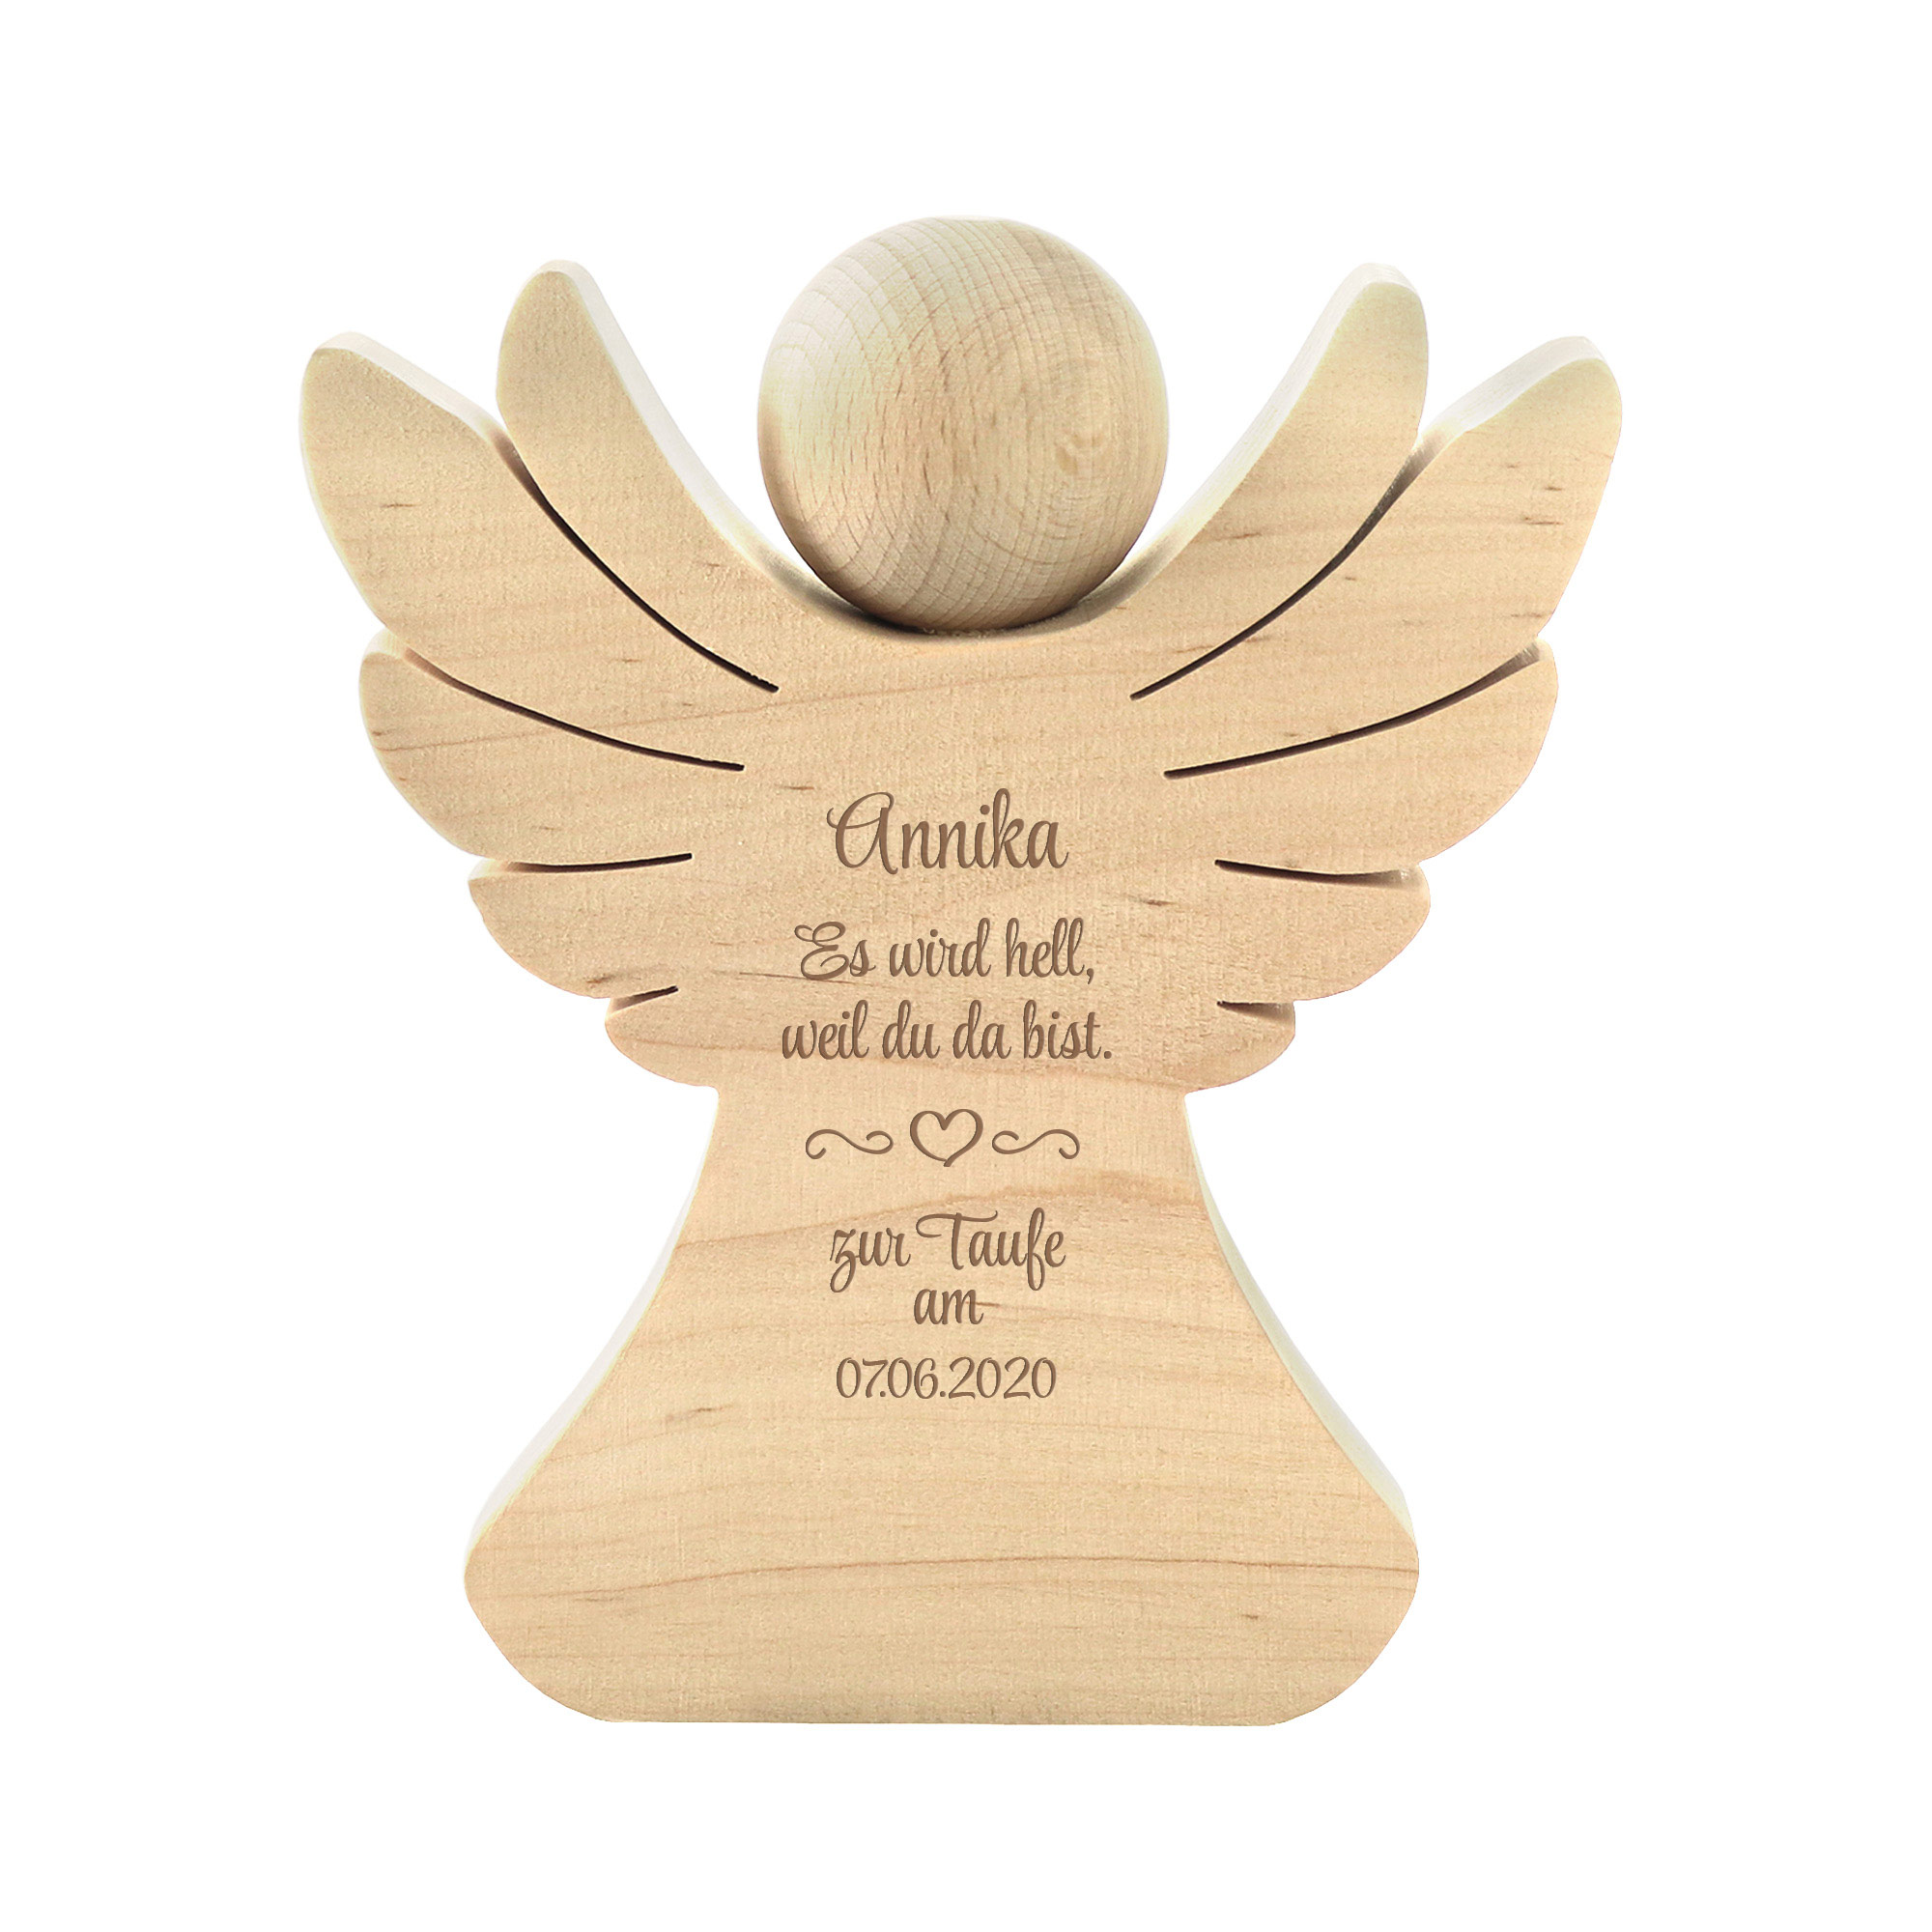 Engel aus Holz mit Gravur zur Taufe - Personalisiert